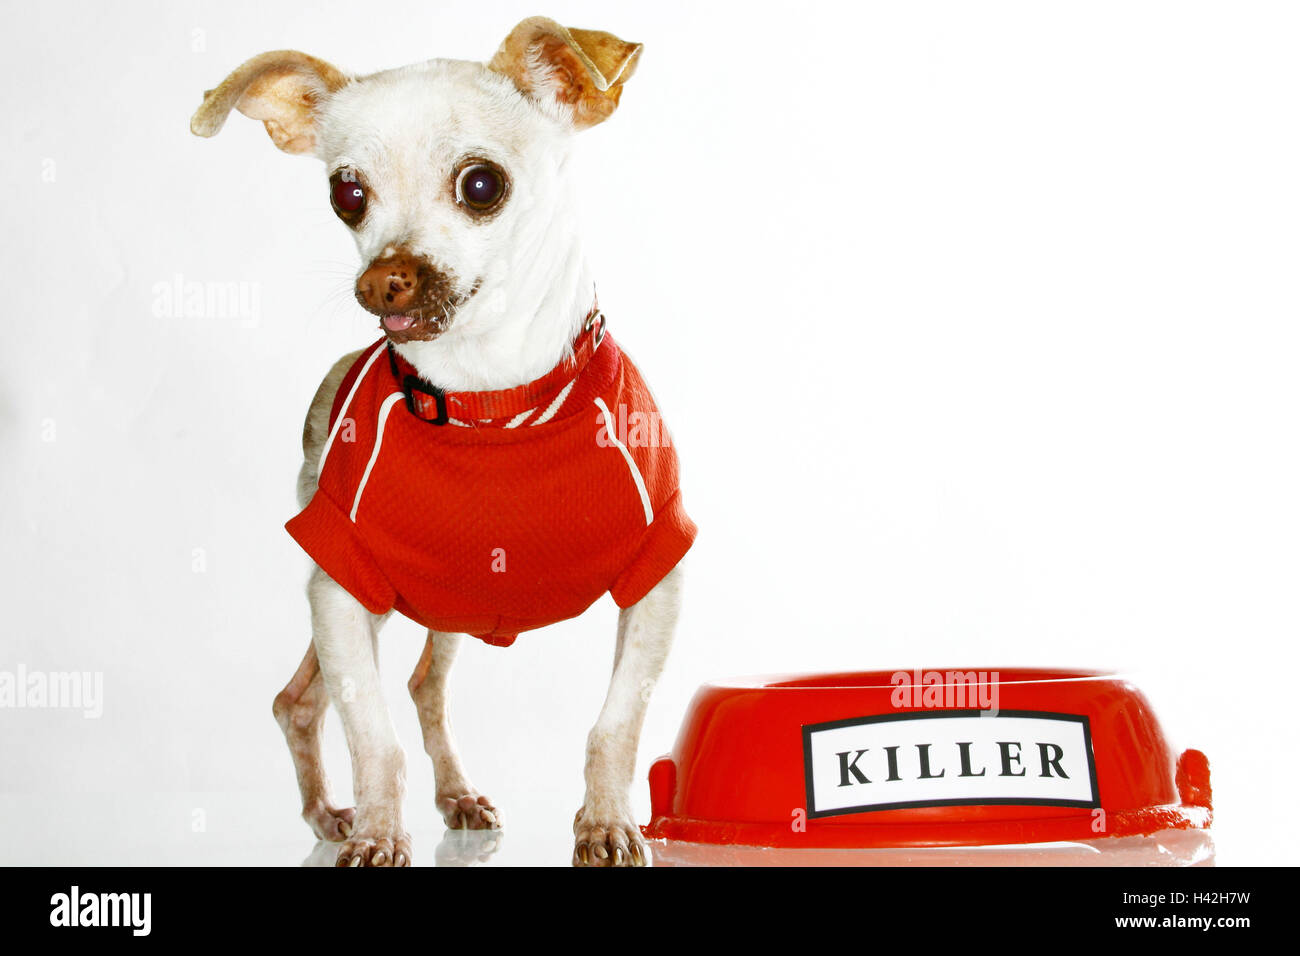 Chihuahua, camisa, perro porringer, la etiqueta "Killer" del PET, la vuelta perro, perrito, pedigree del perro, perro, pequeño, ansiosamente, dulcemente, perro de moda, ropa para poco suéter, perro pastor,